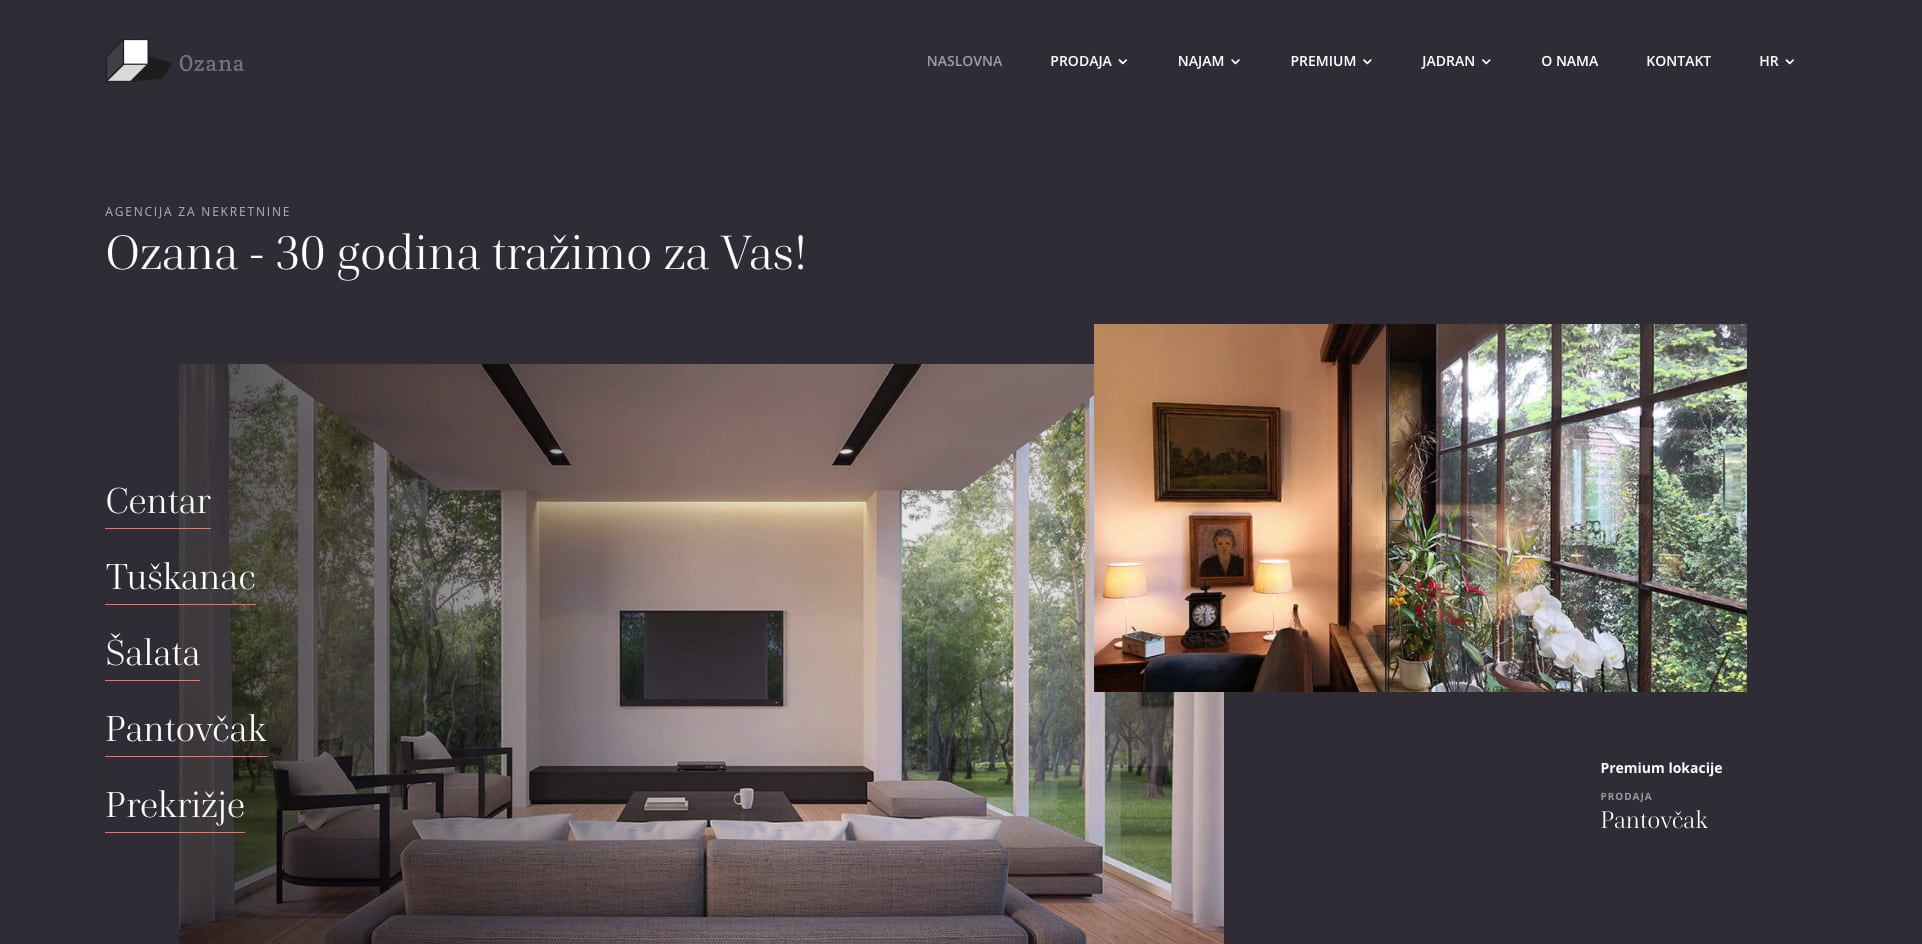 Dizajn i izrada web stranice za prodaju nekretnina - intro prikaz naslovnice